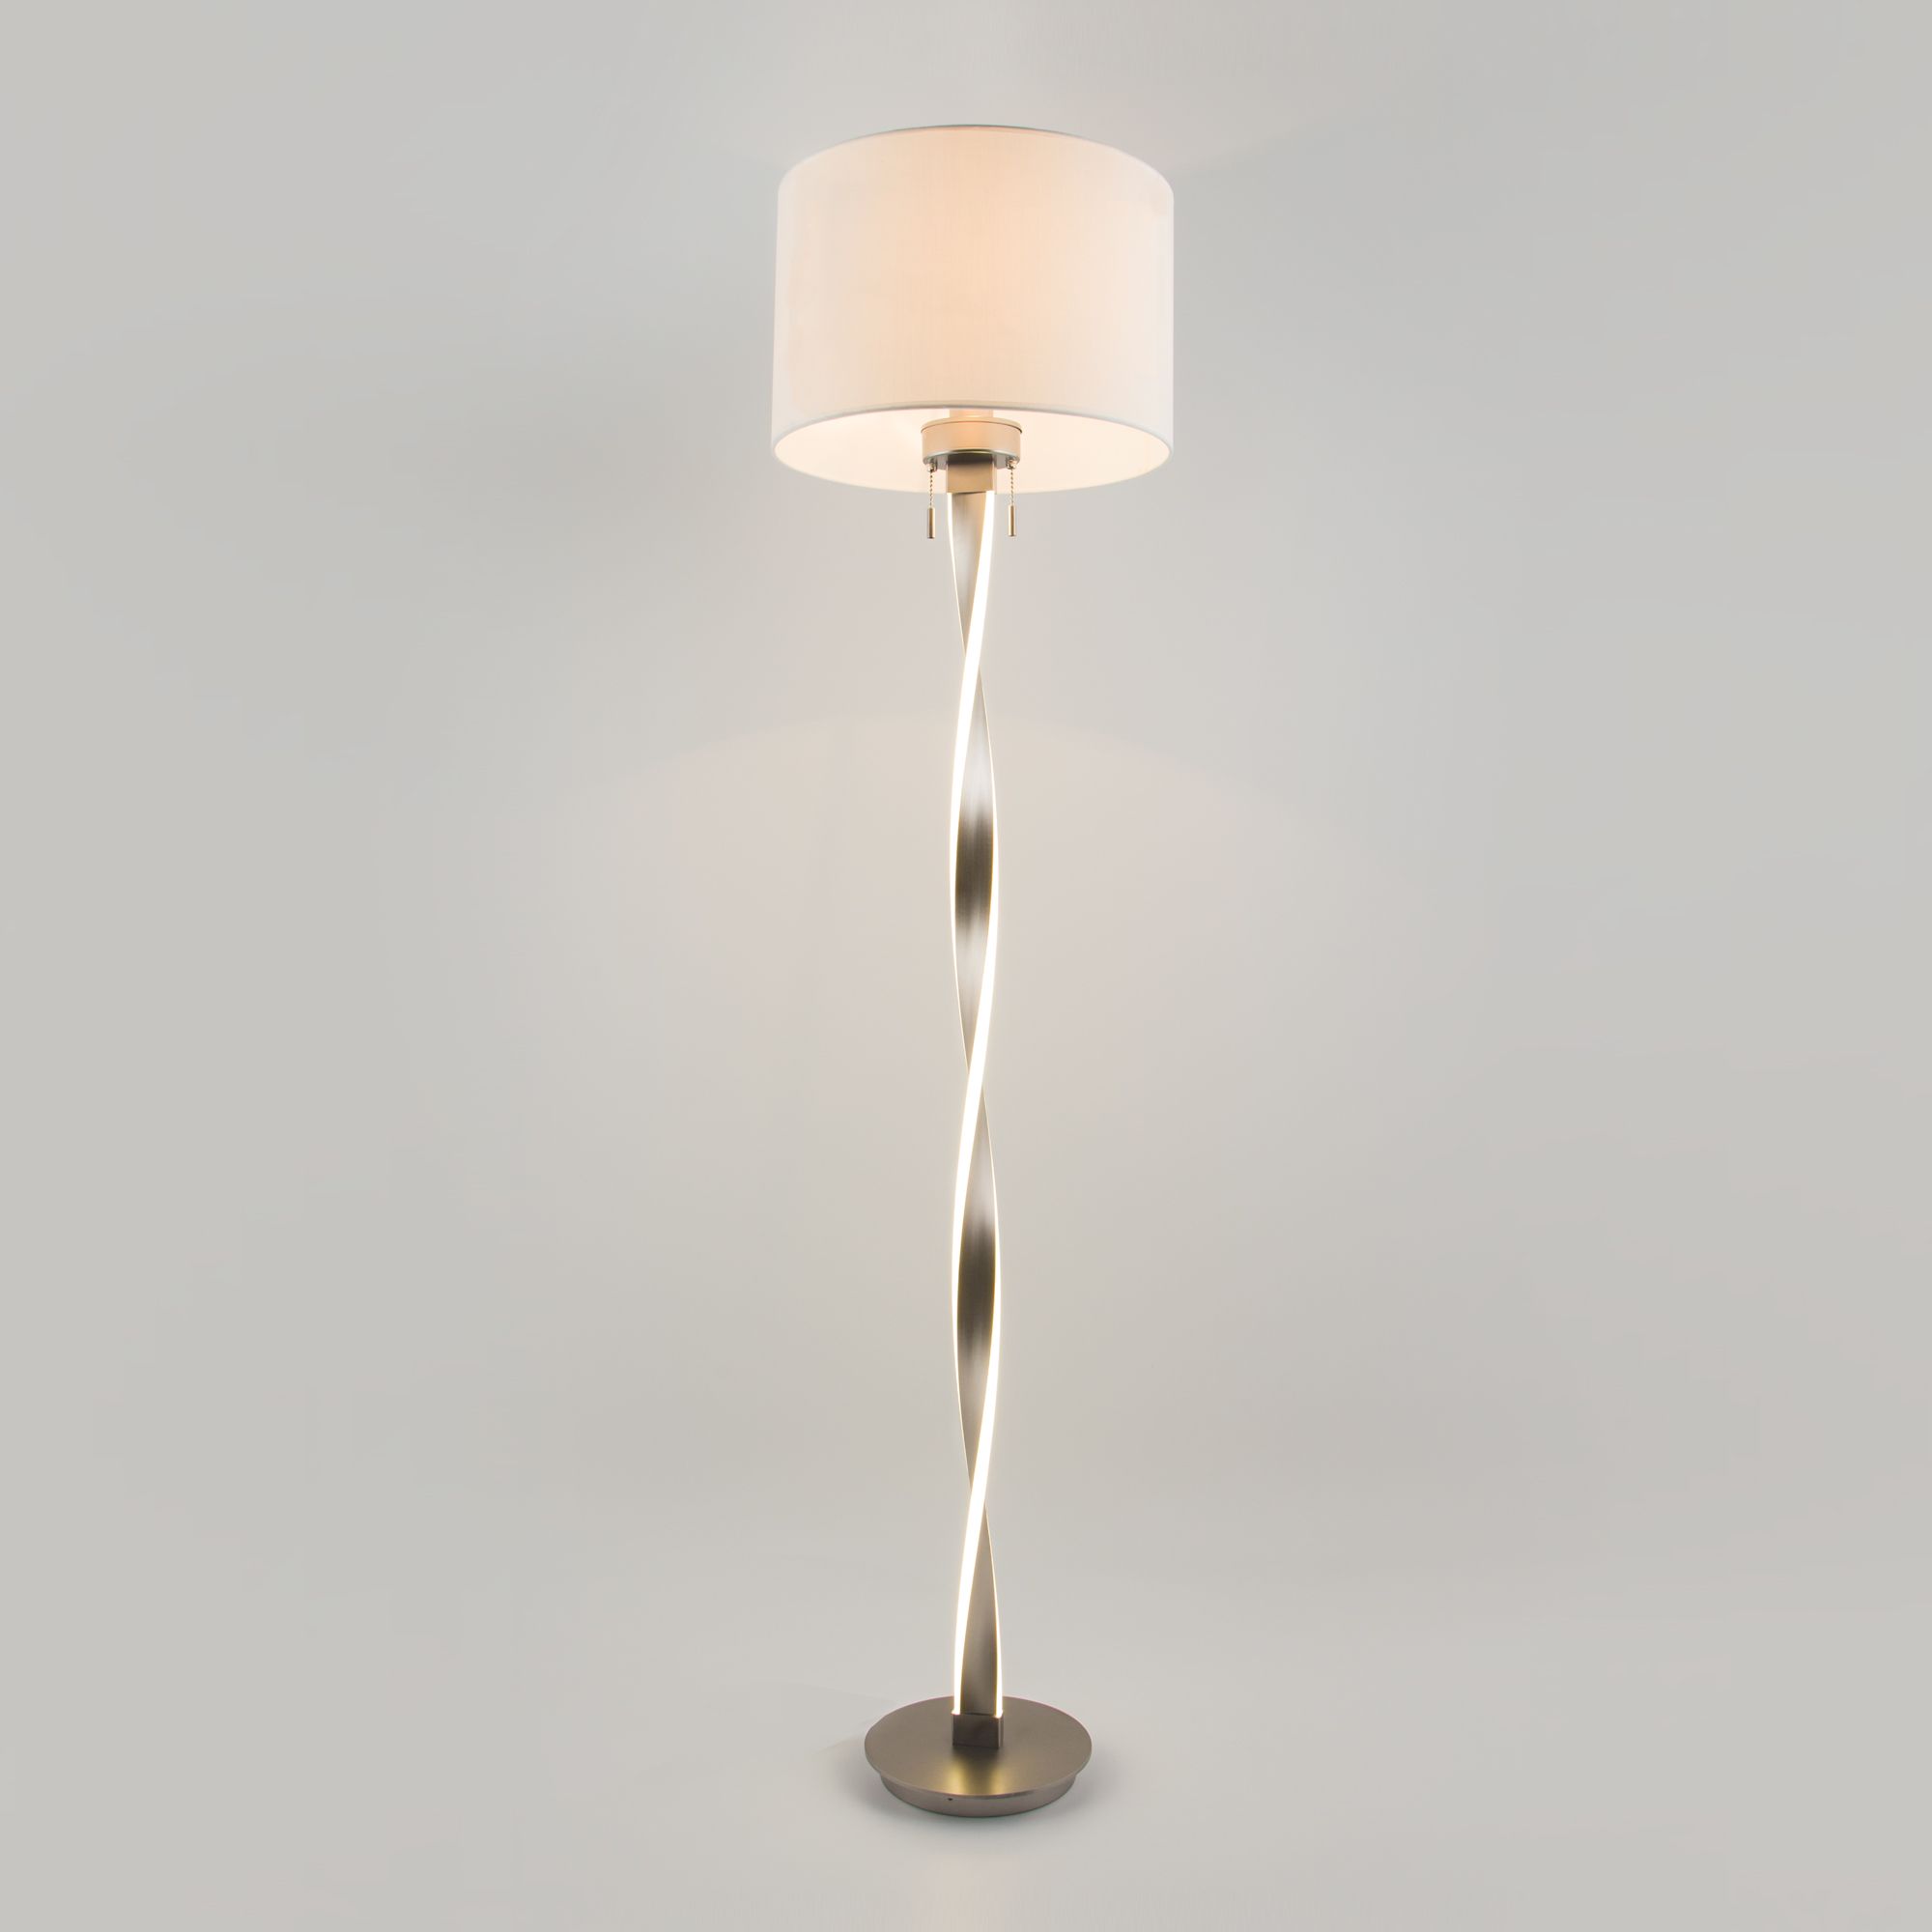 Напольный светодиодный светильник с тканевым абажуром Bogate's Titan 992 белый / никель. Фото 1